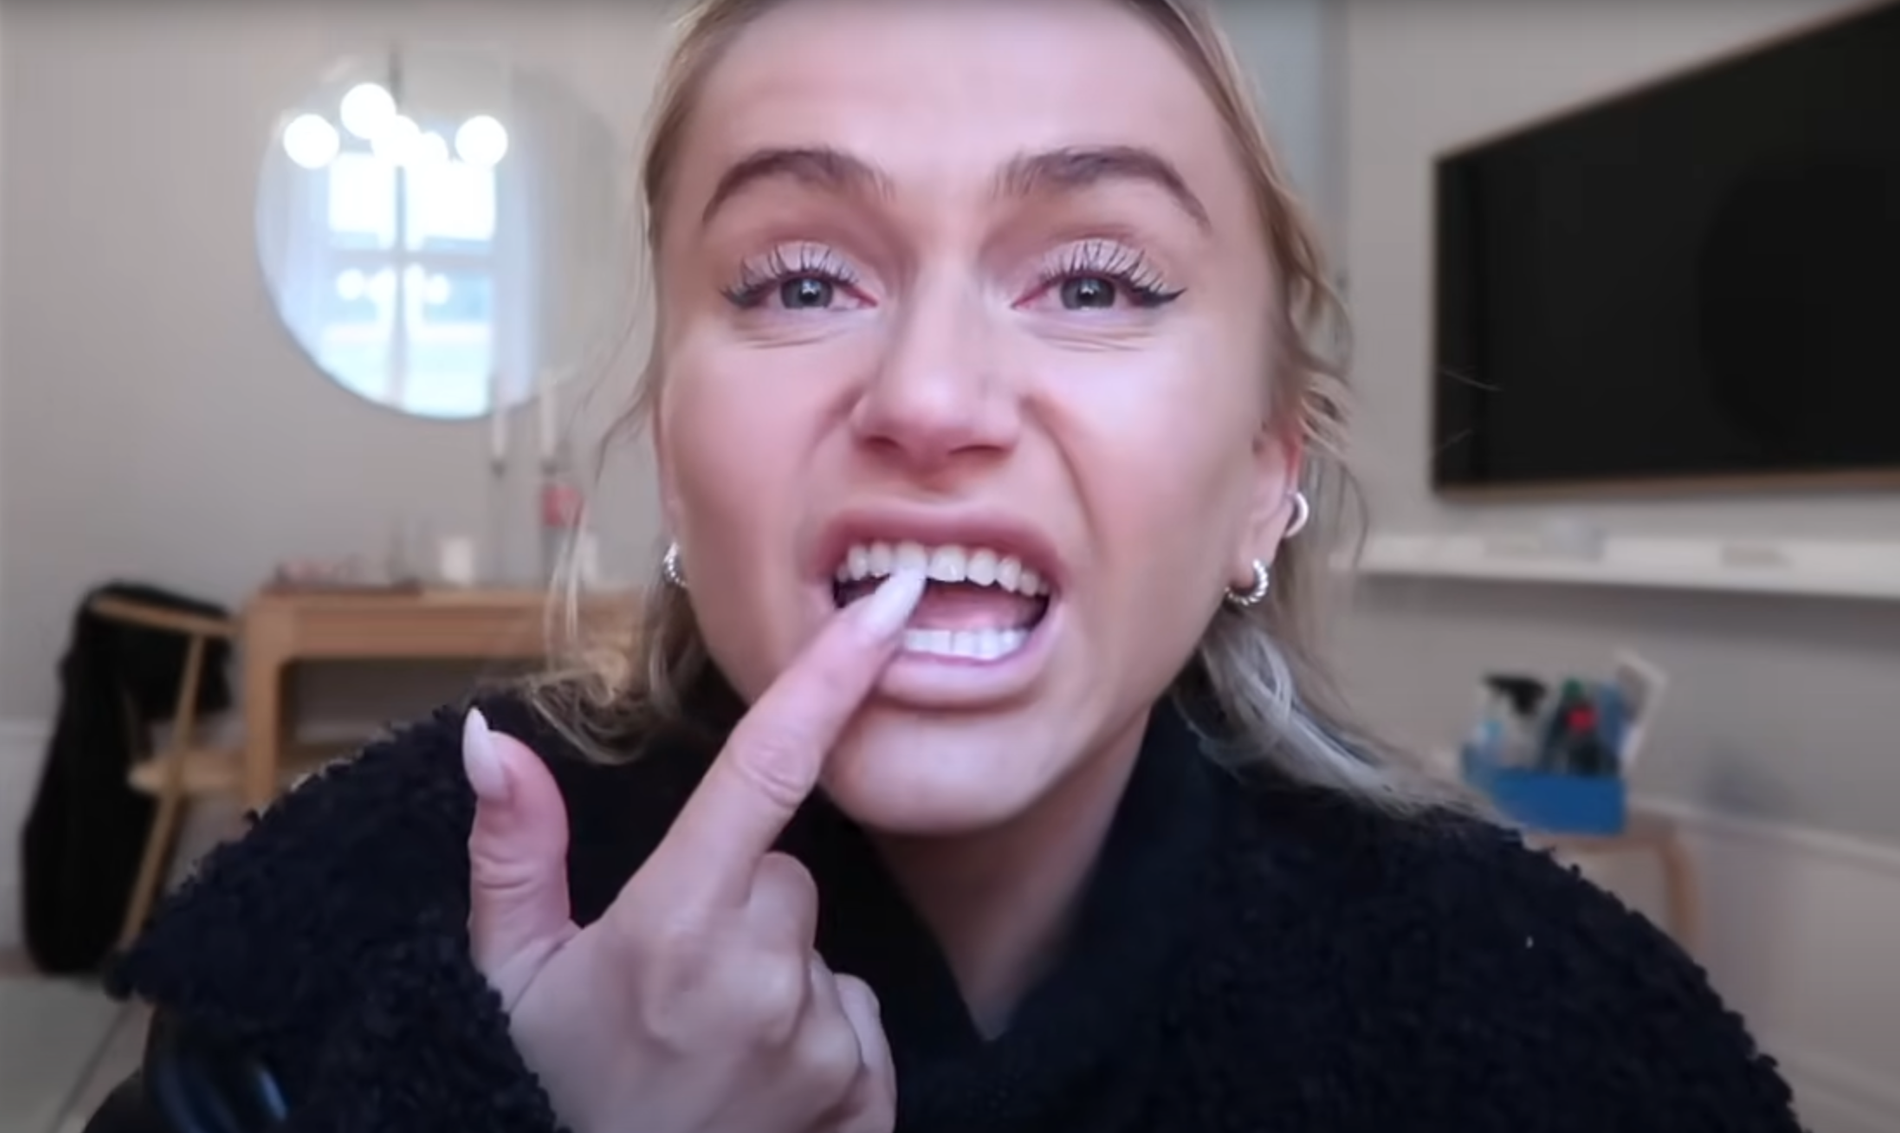 Influencern visar upp tänderna i video.